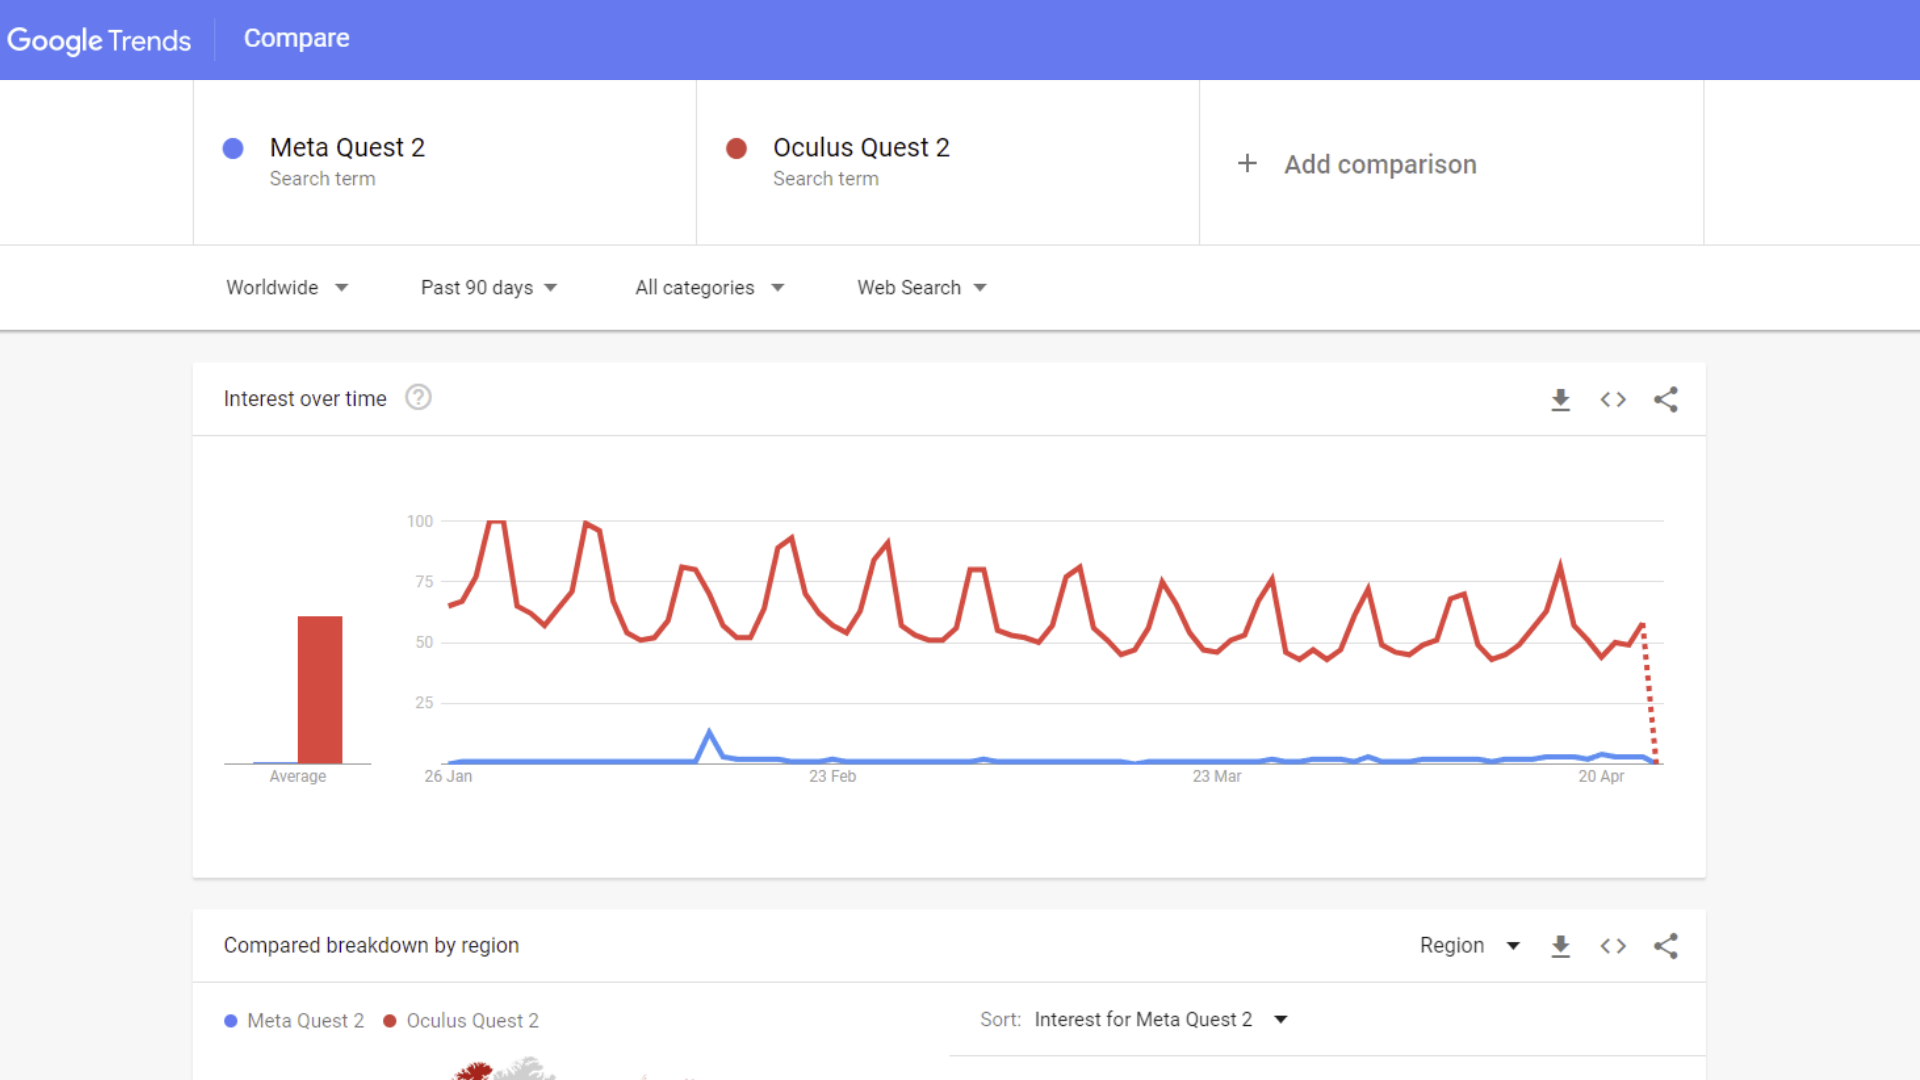 Google trends data comparing Oculus Quest 2 to Meta Quest 2